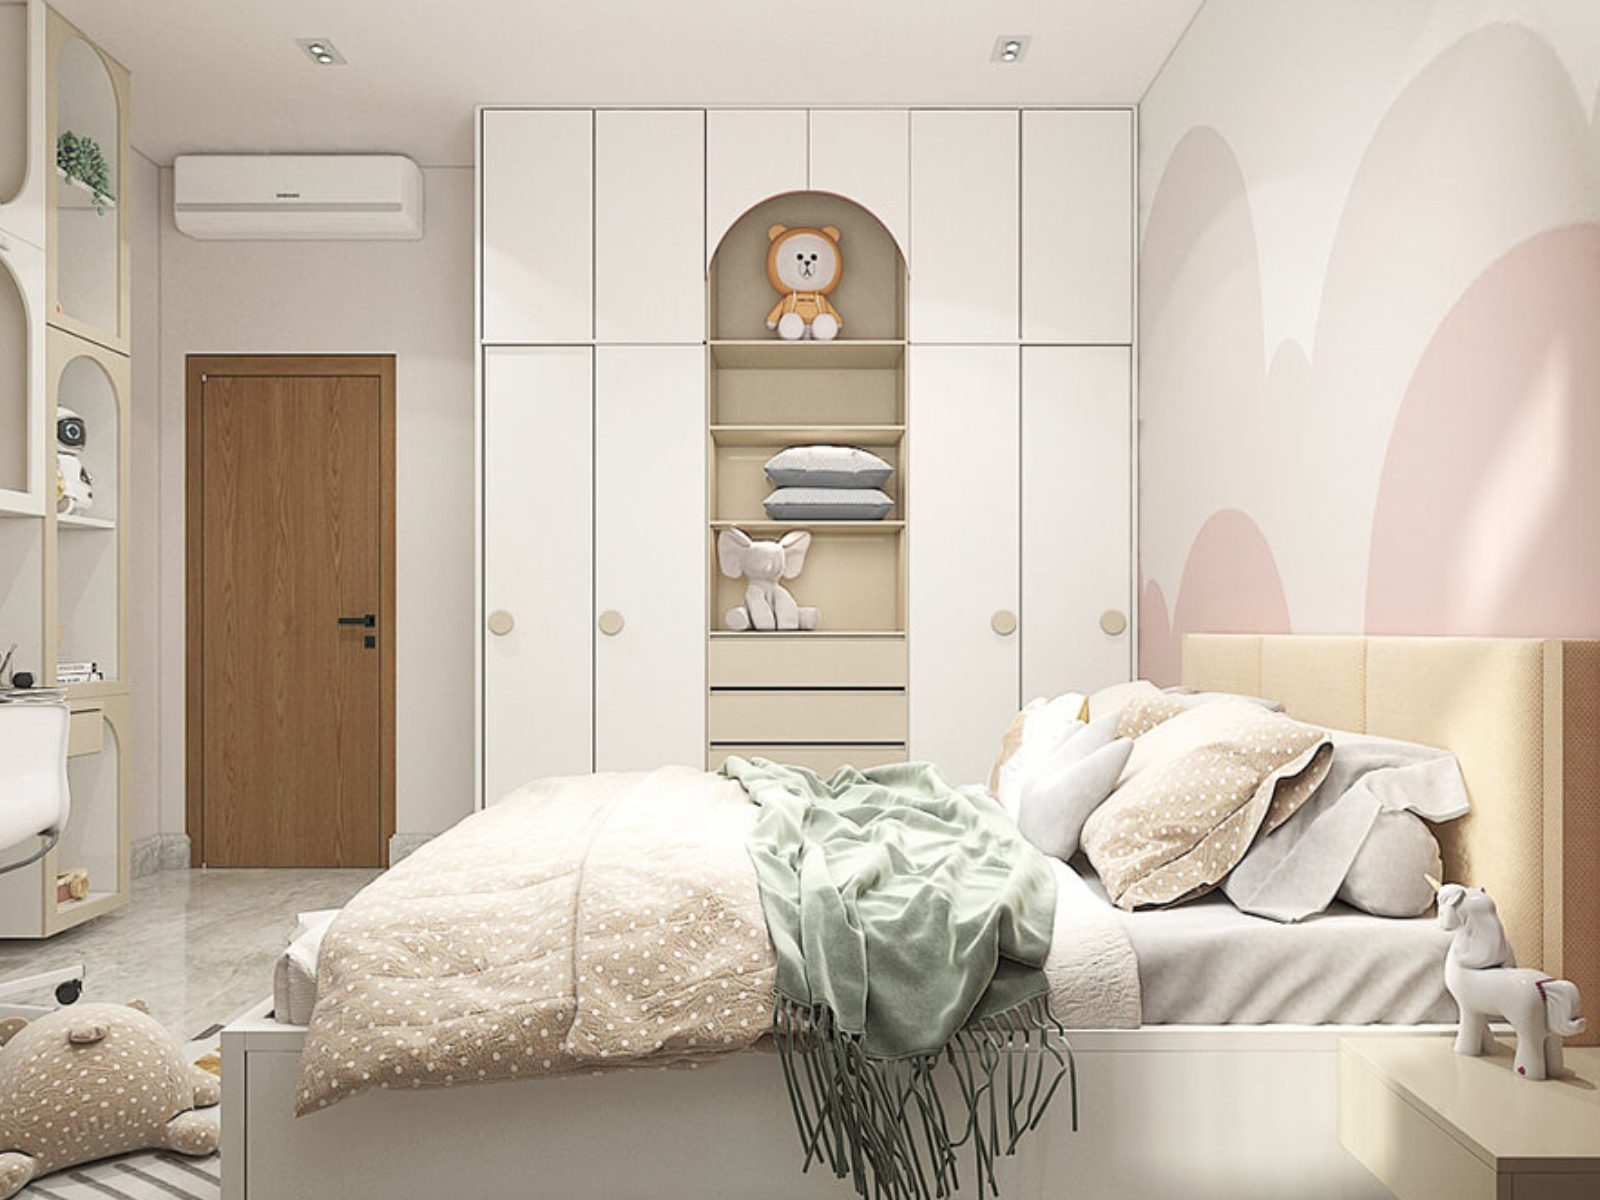 Phòng ngủ bé gái màu hồng nhạt hiện đại, tiện nghi